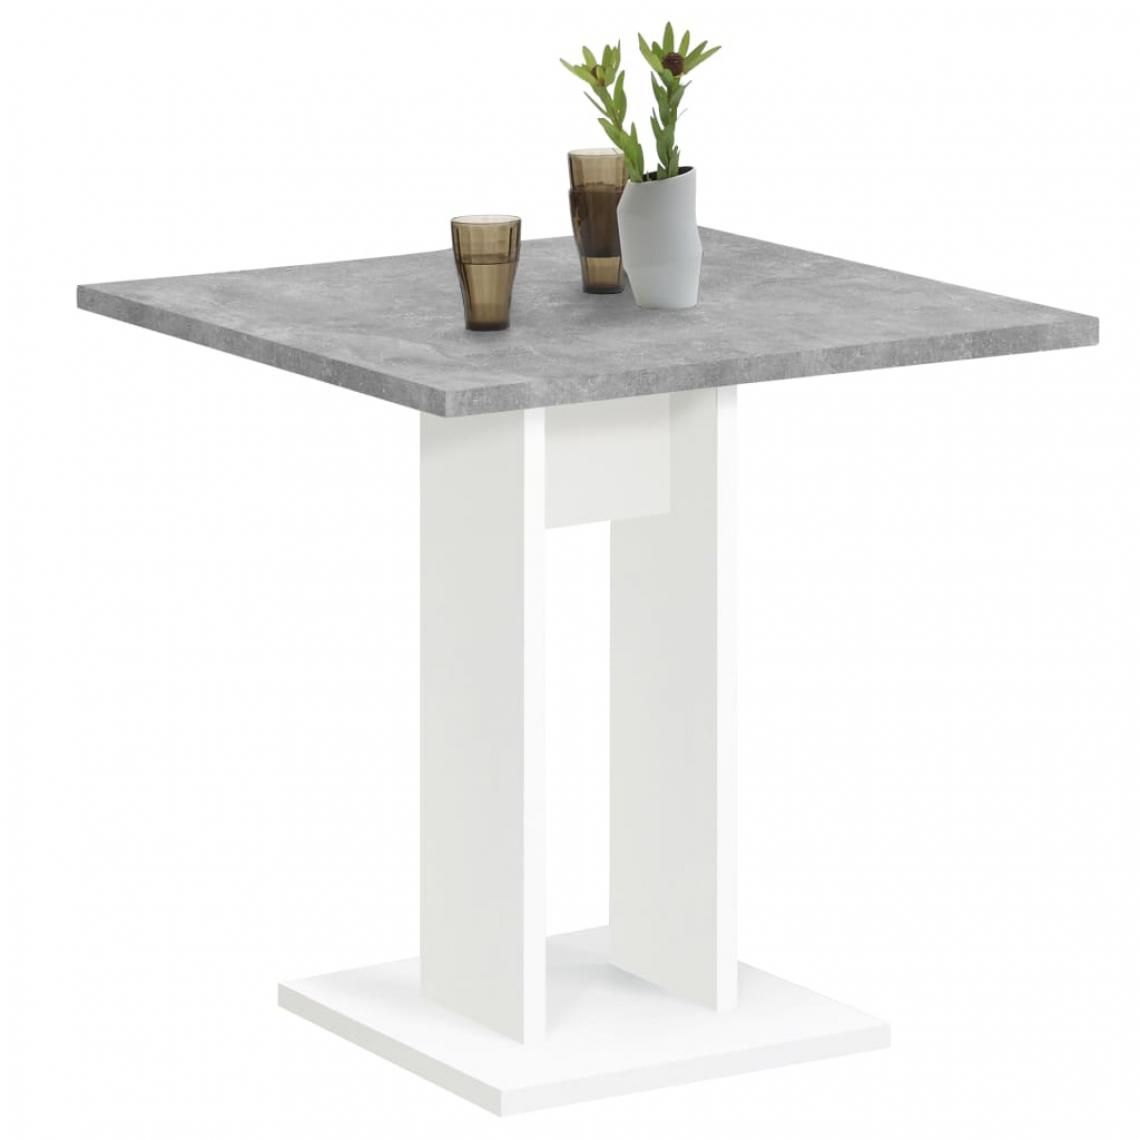 Icaverne - Moderne Tables reference Séoul FMD Table de salle à manger 70 cm Gris béton et blanc - Tables à manger